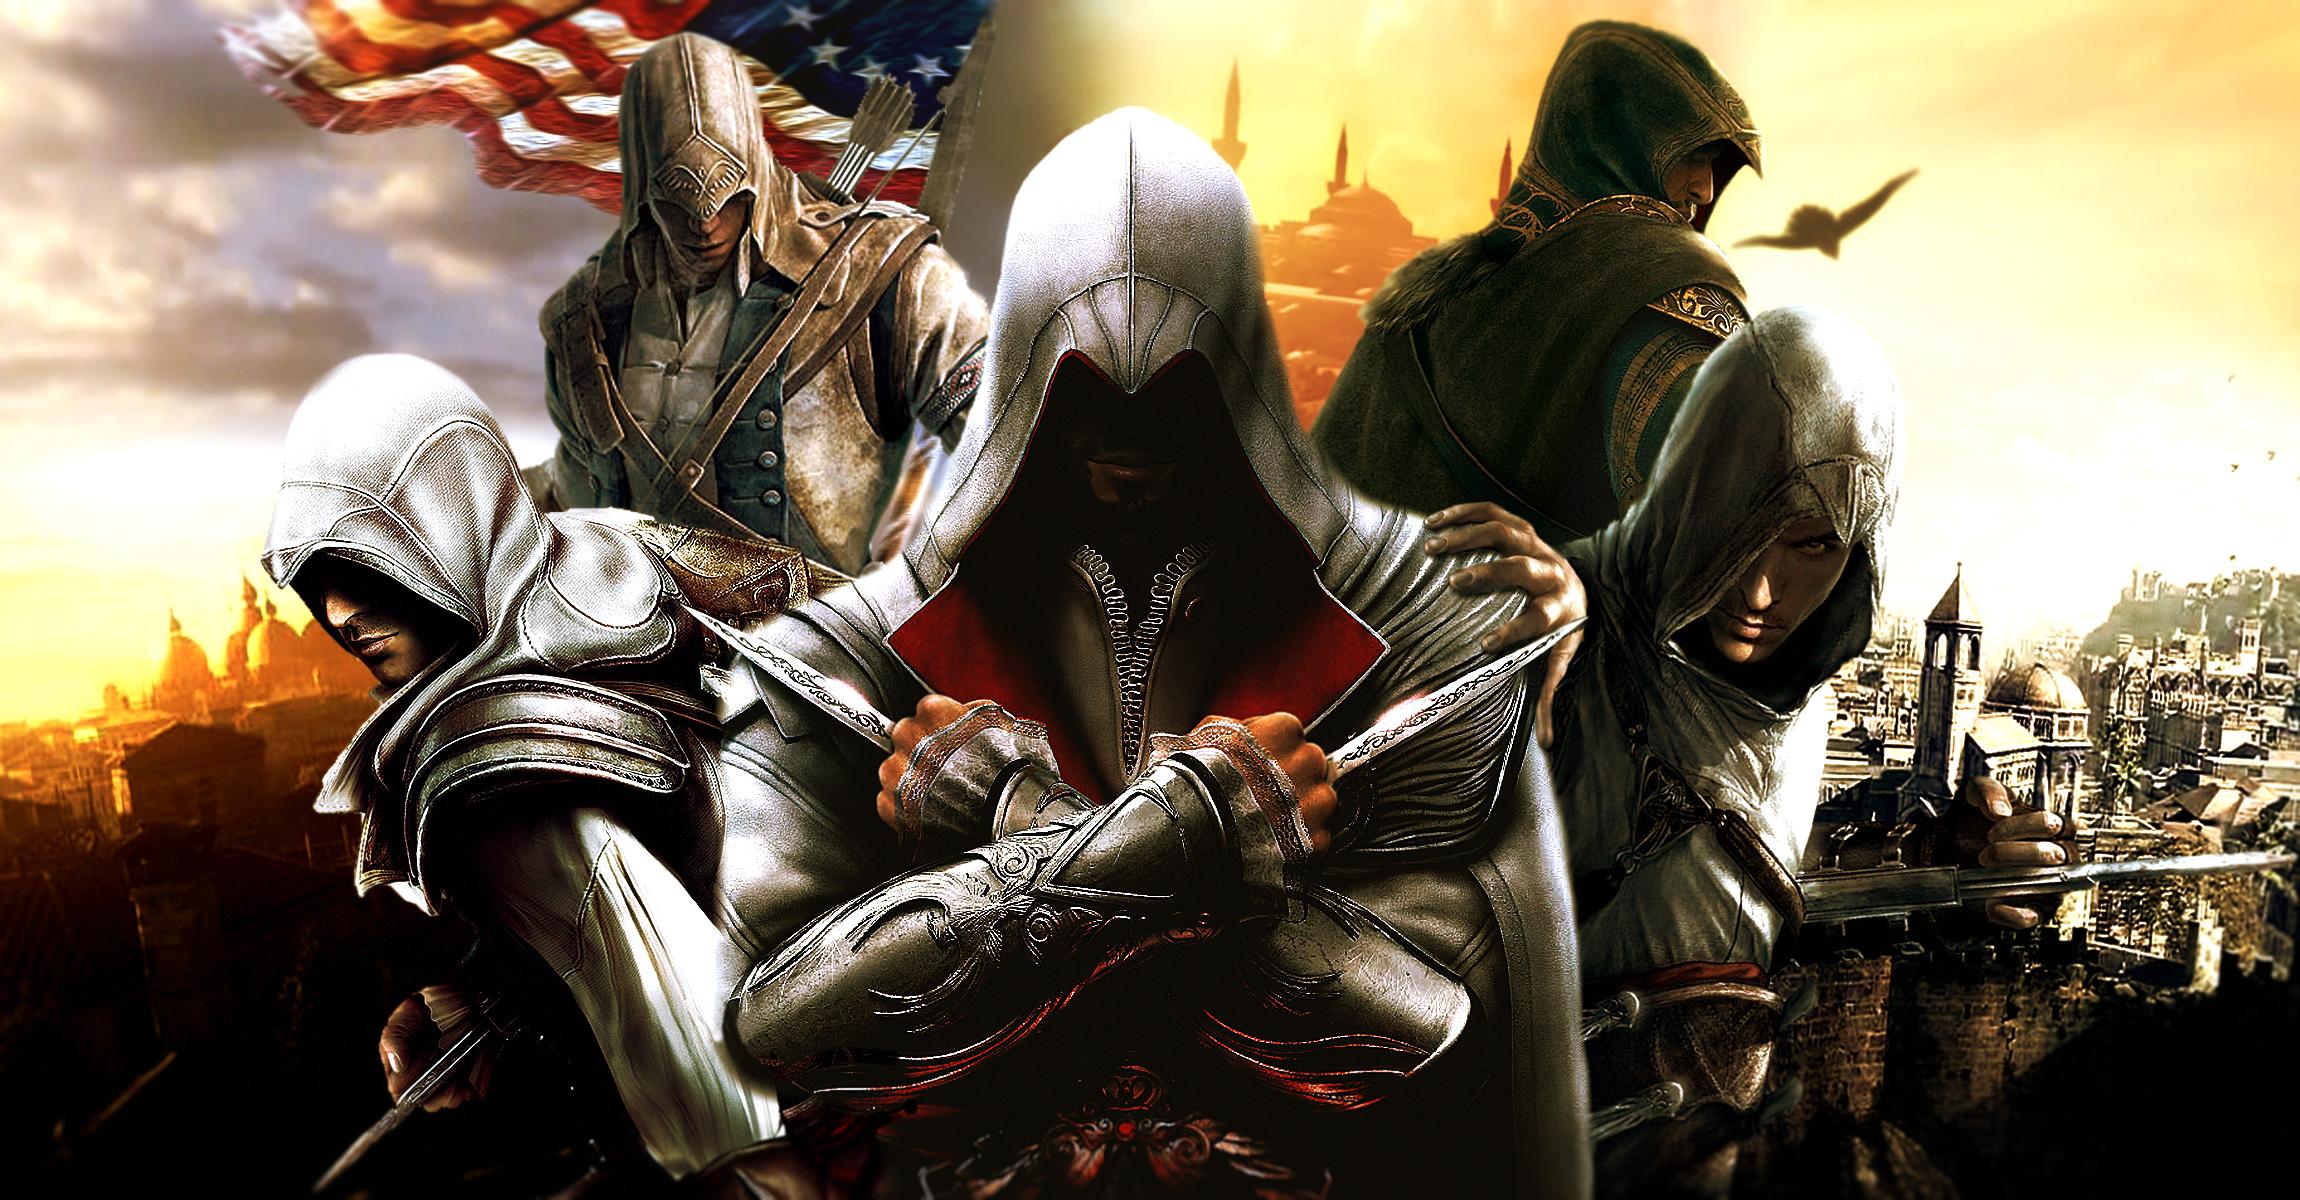 2300 x 1200 · jpeg - Assassins Creed Wallpaper Windows 7 #7303 Wallpaper | WallDiskPaper